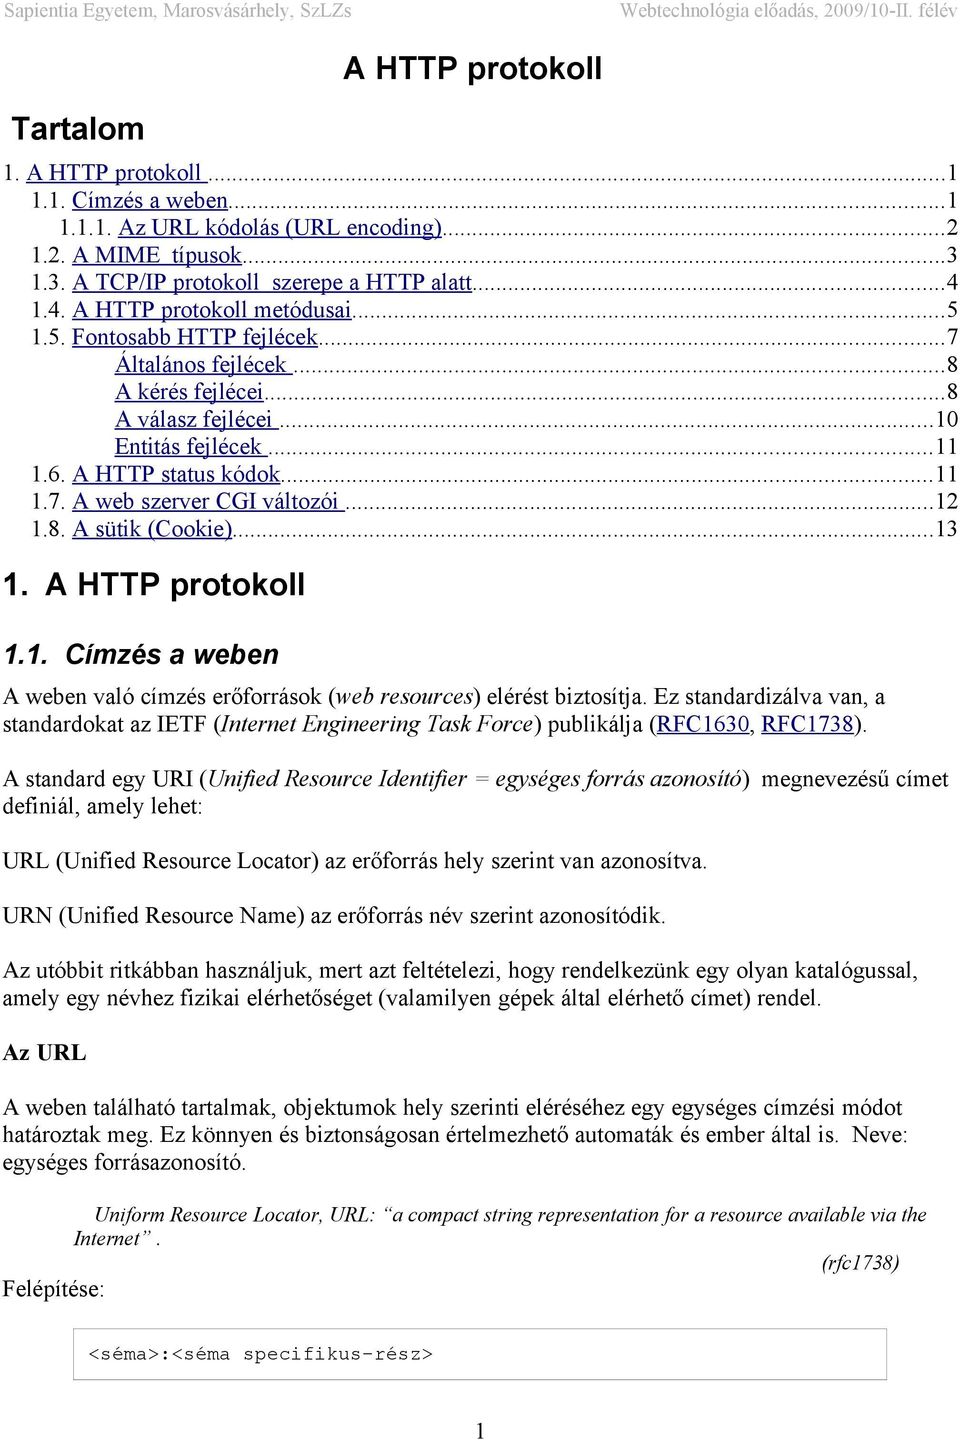 ..12 1.8. A sütik (Cookie)...13 1. A HTTP protokoll 1.1. Címzés a weben A weben való címzés erőforrások (web resources) elérést biztosítja.